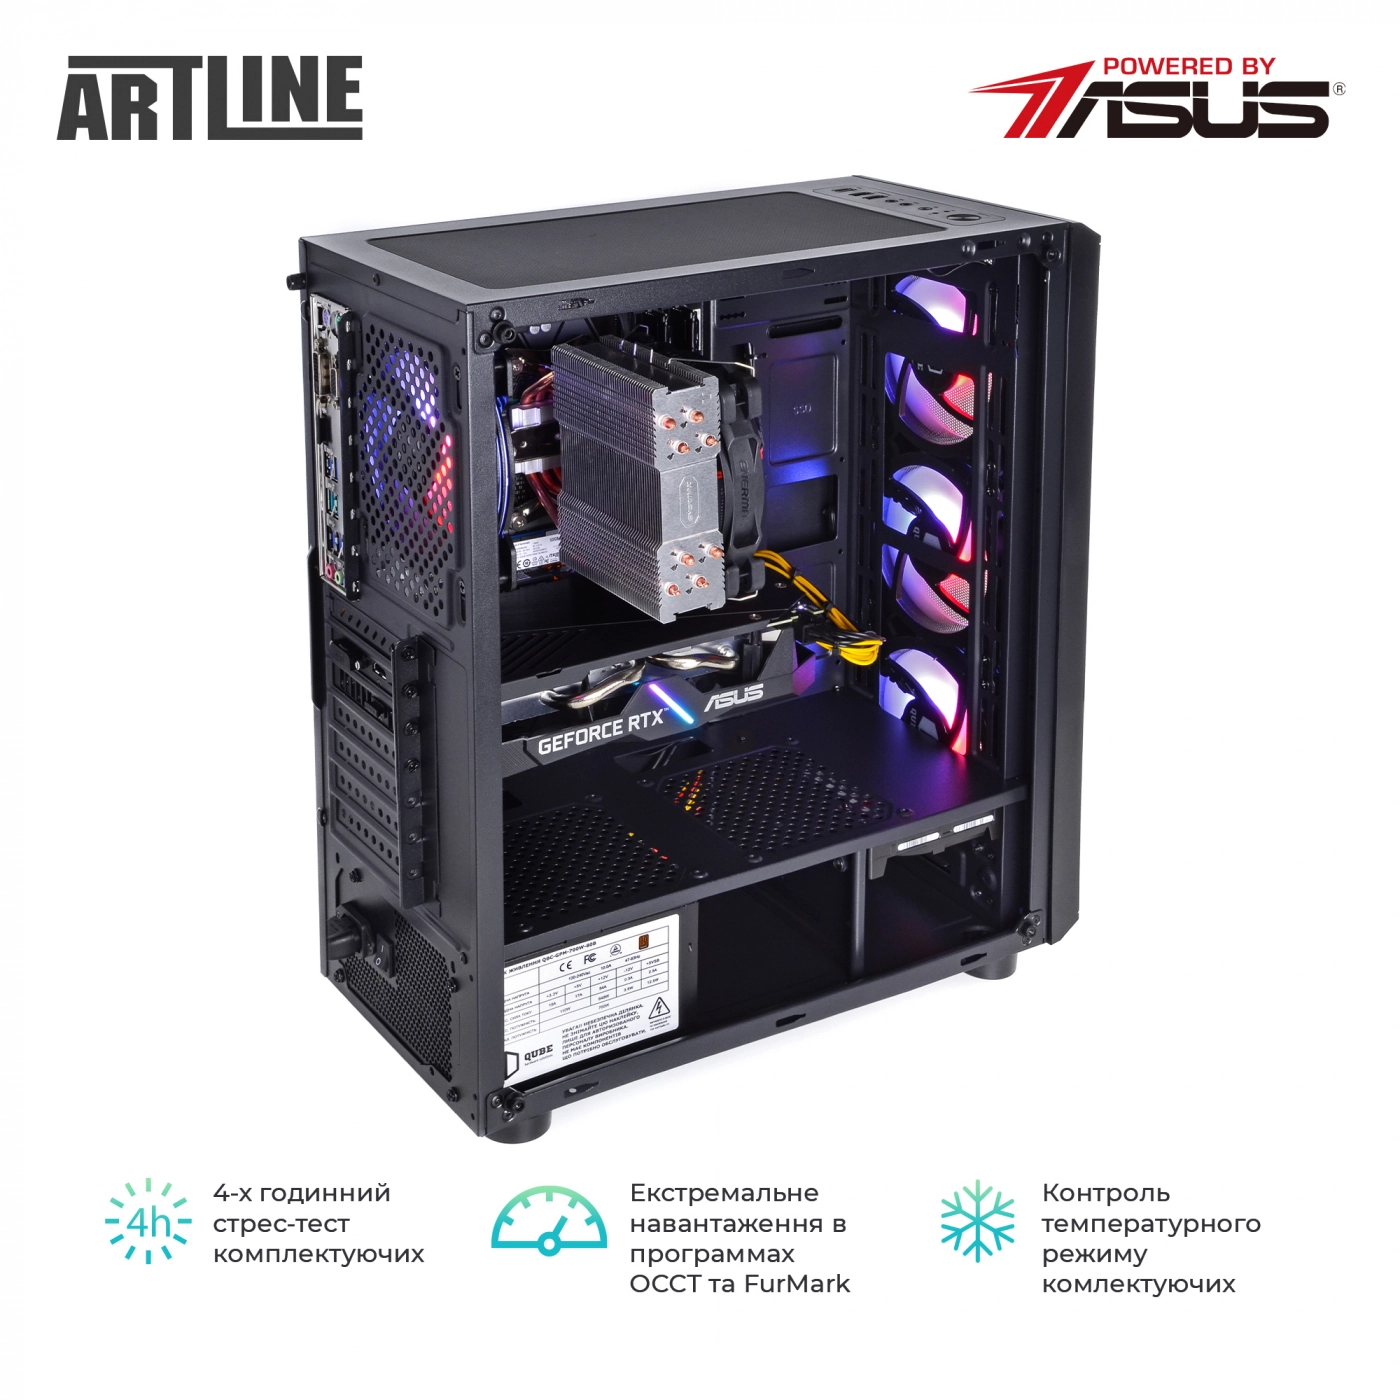 Купить Компьютер ARTLINE Gaming X88v20 - фото 9